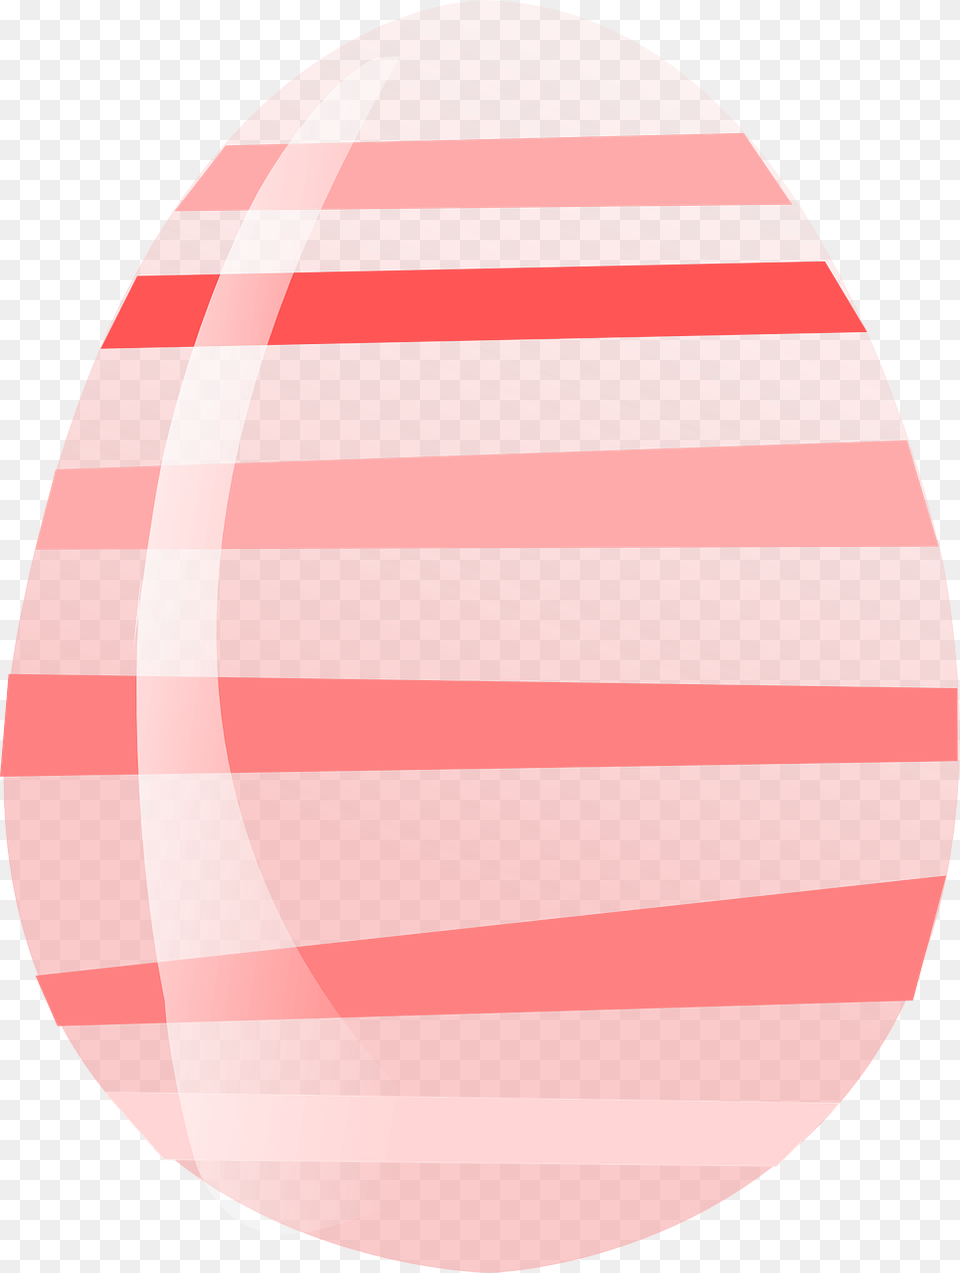 Neon Pink Easter Egg Pink Easter Egg Clipart, Food, Clothing, Easter Egg, Hardhat Png